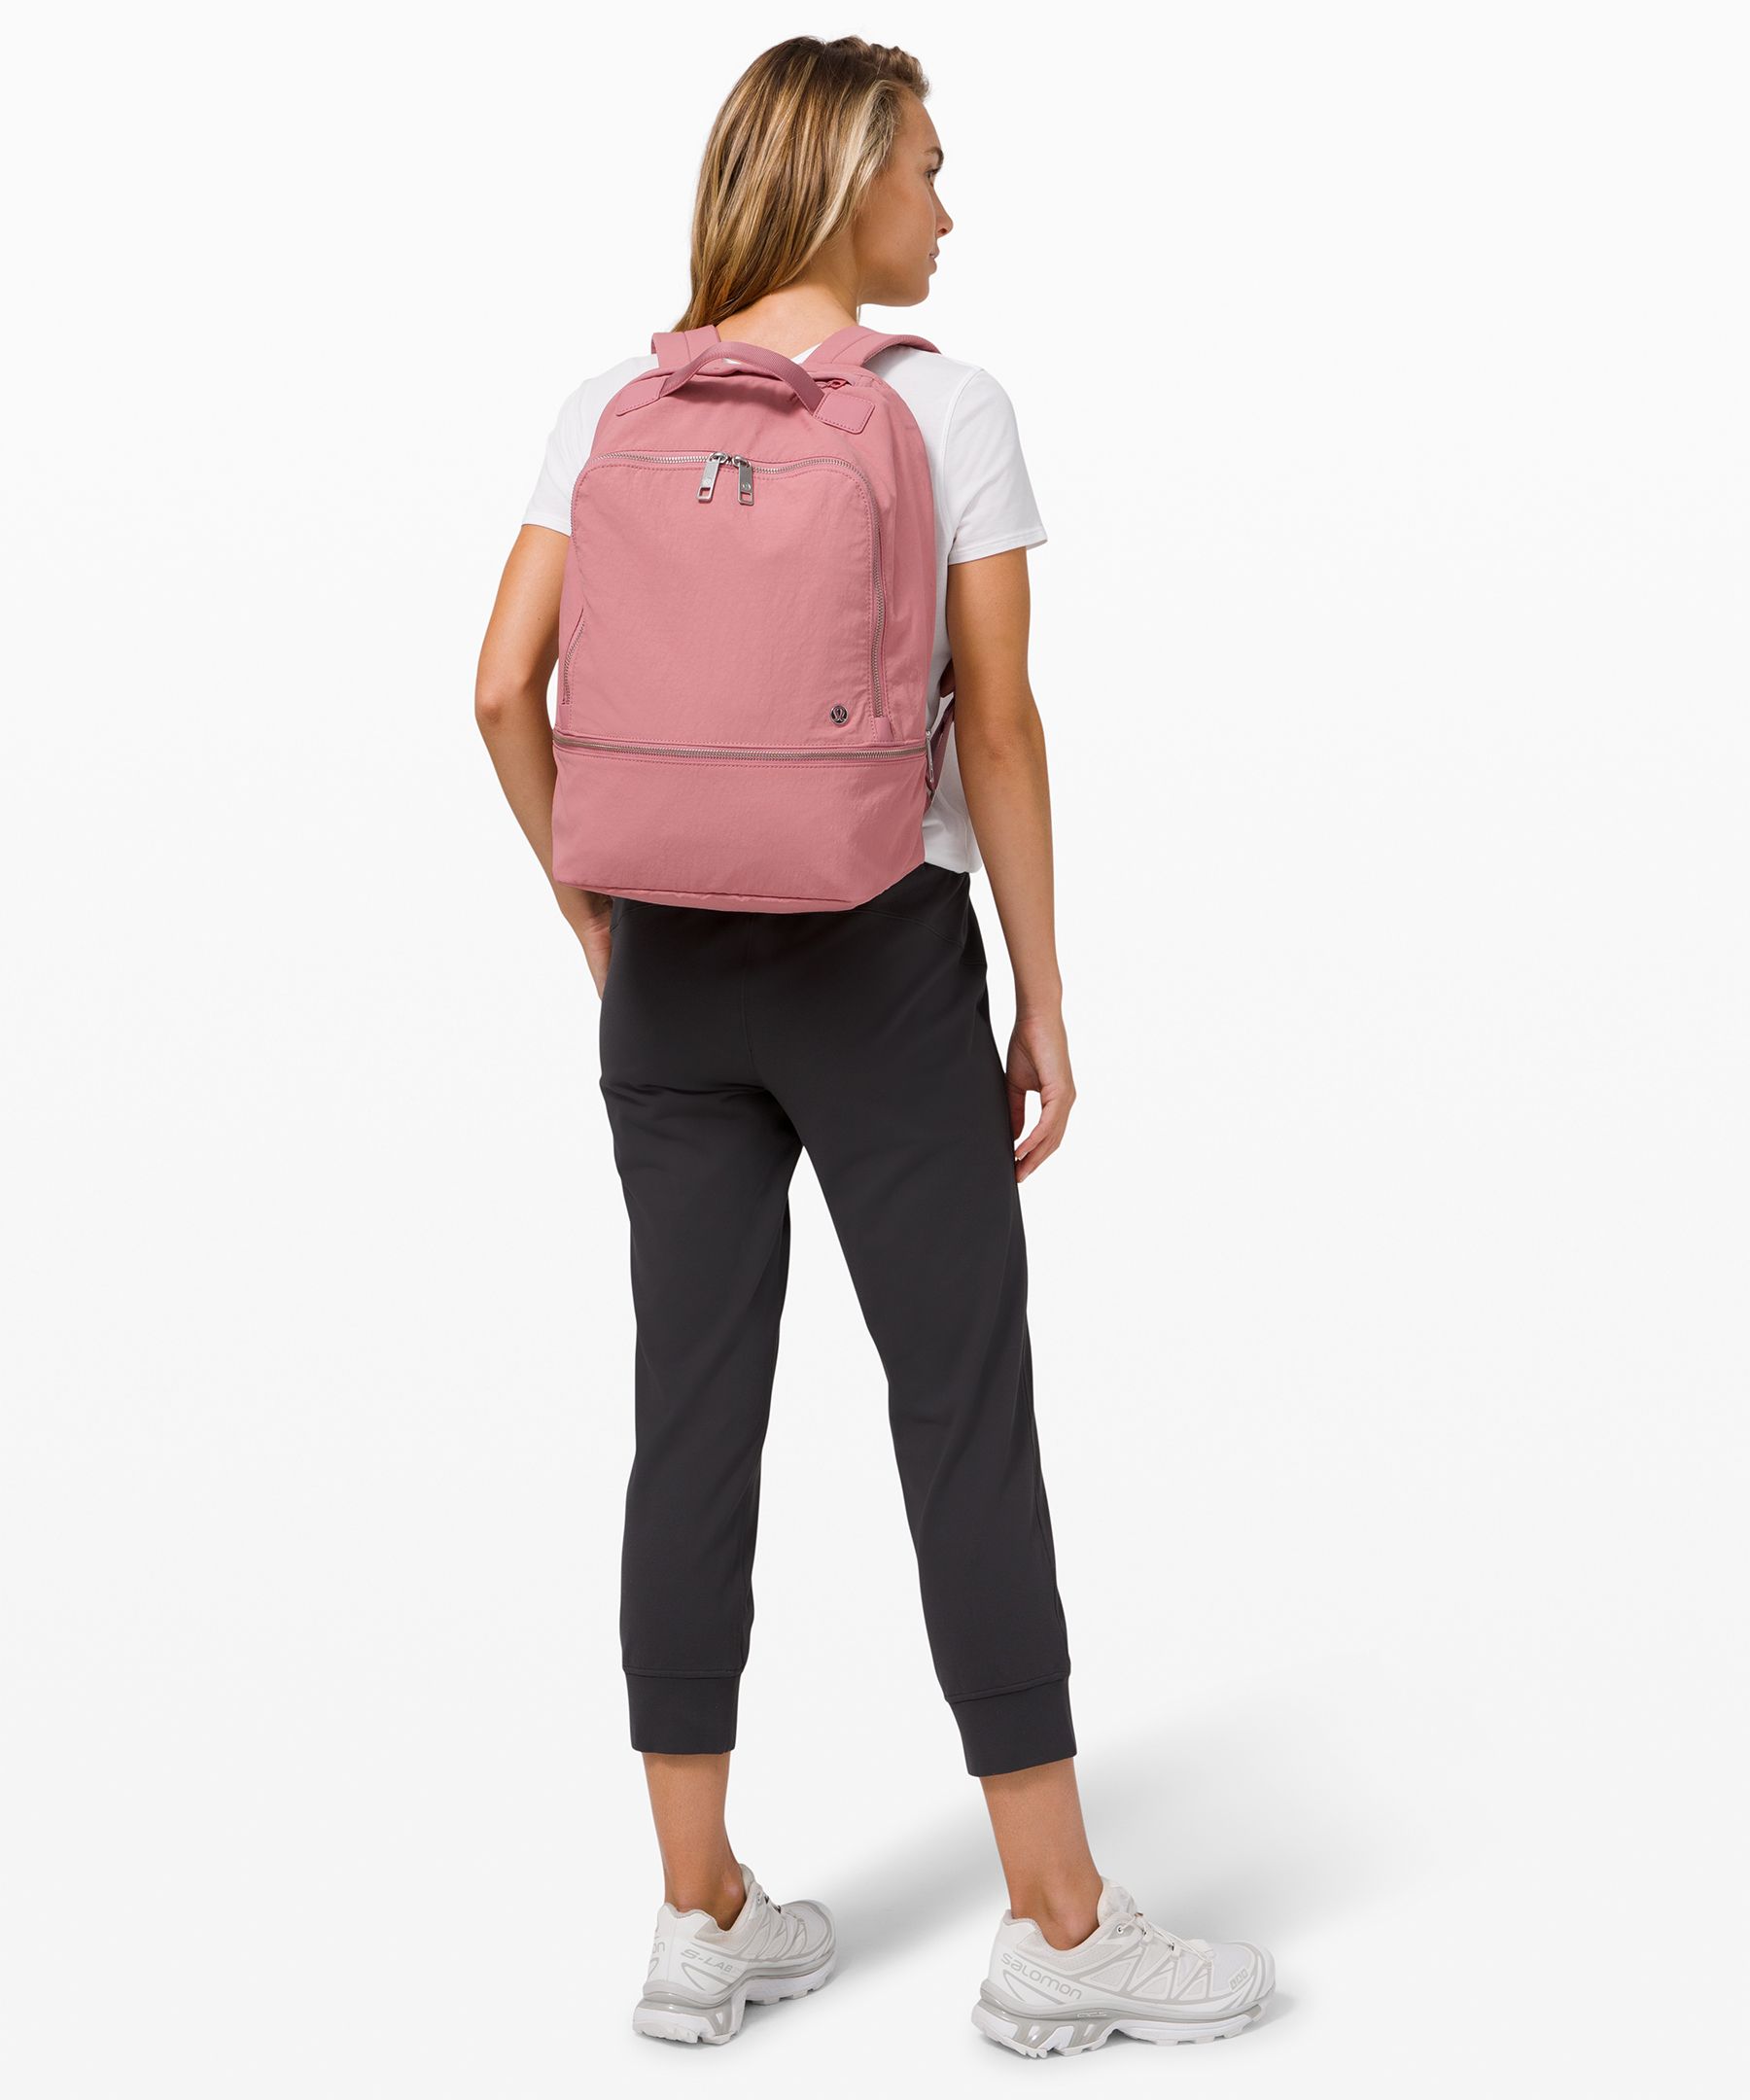 City Adventurer Backpack 17L | Bags 